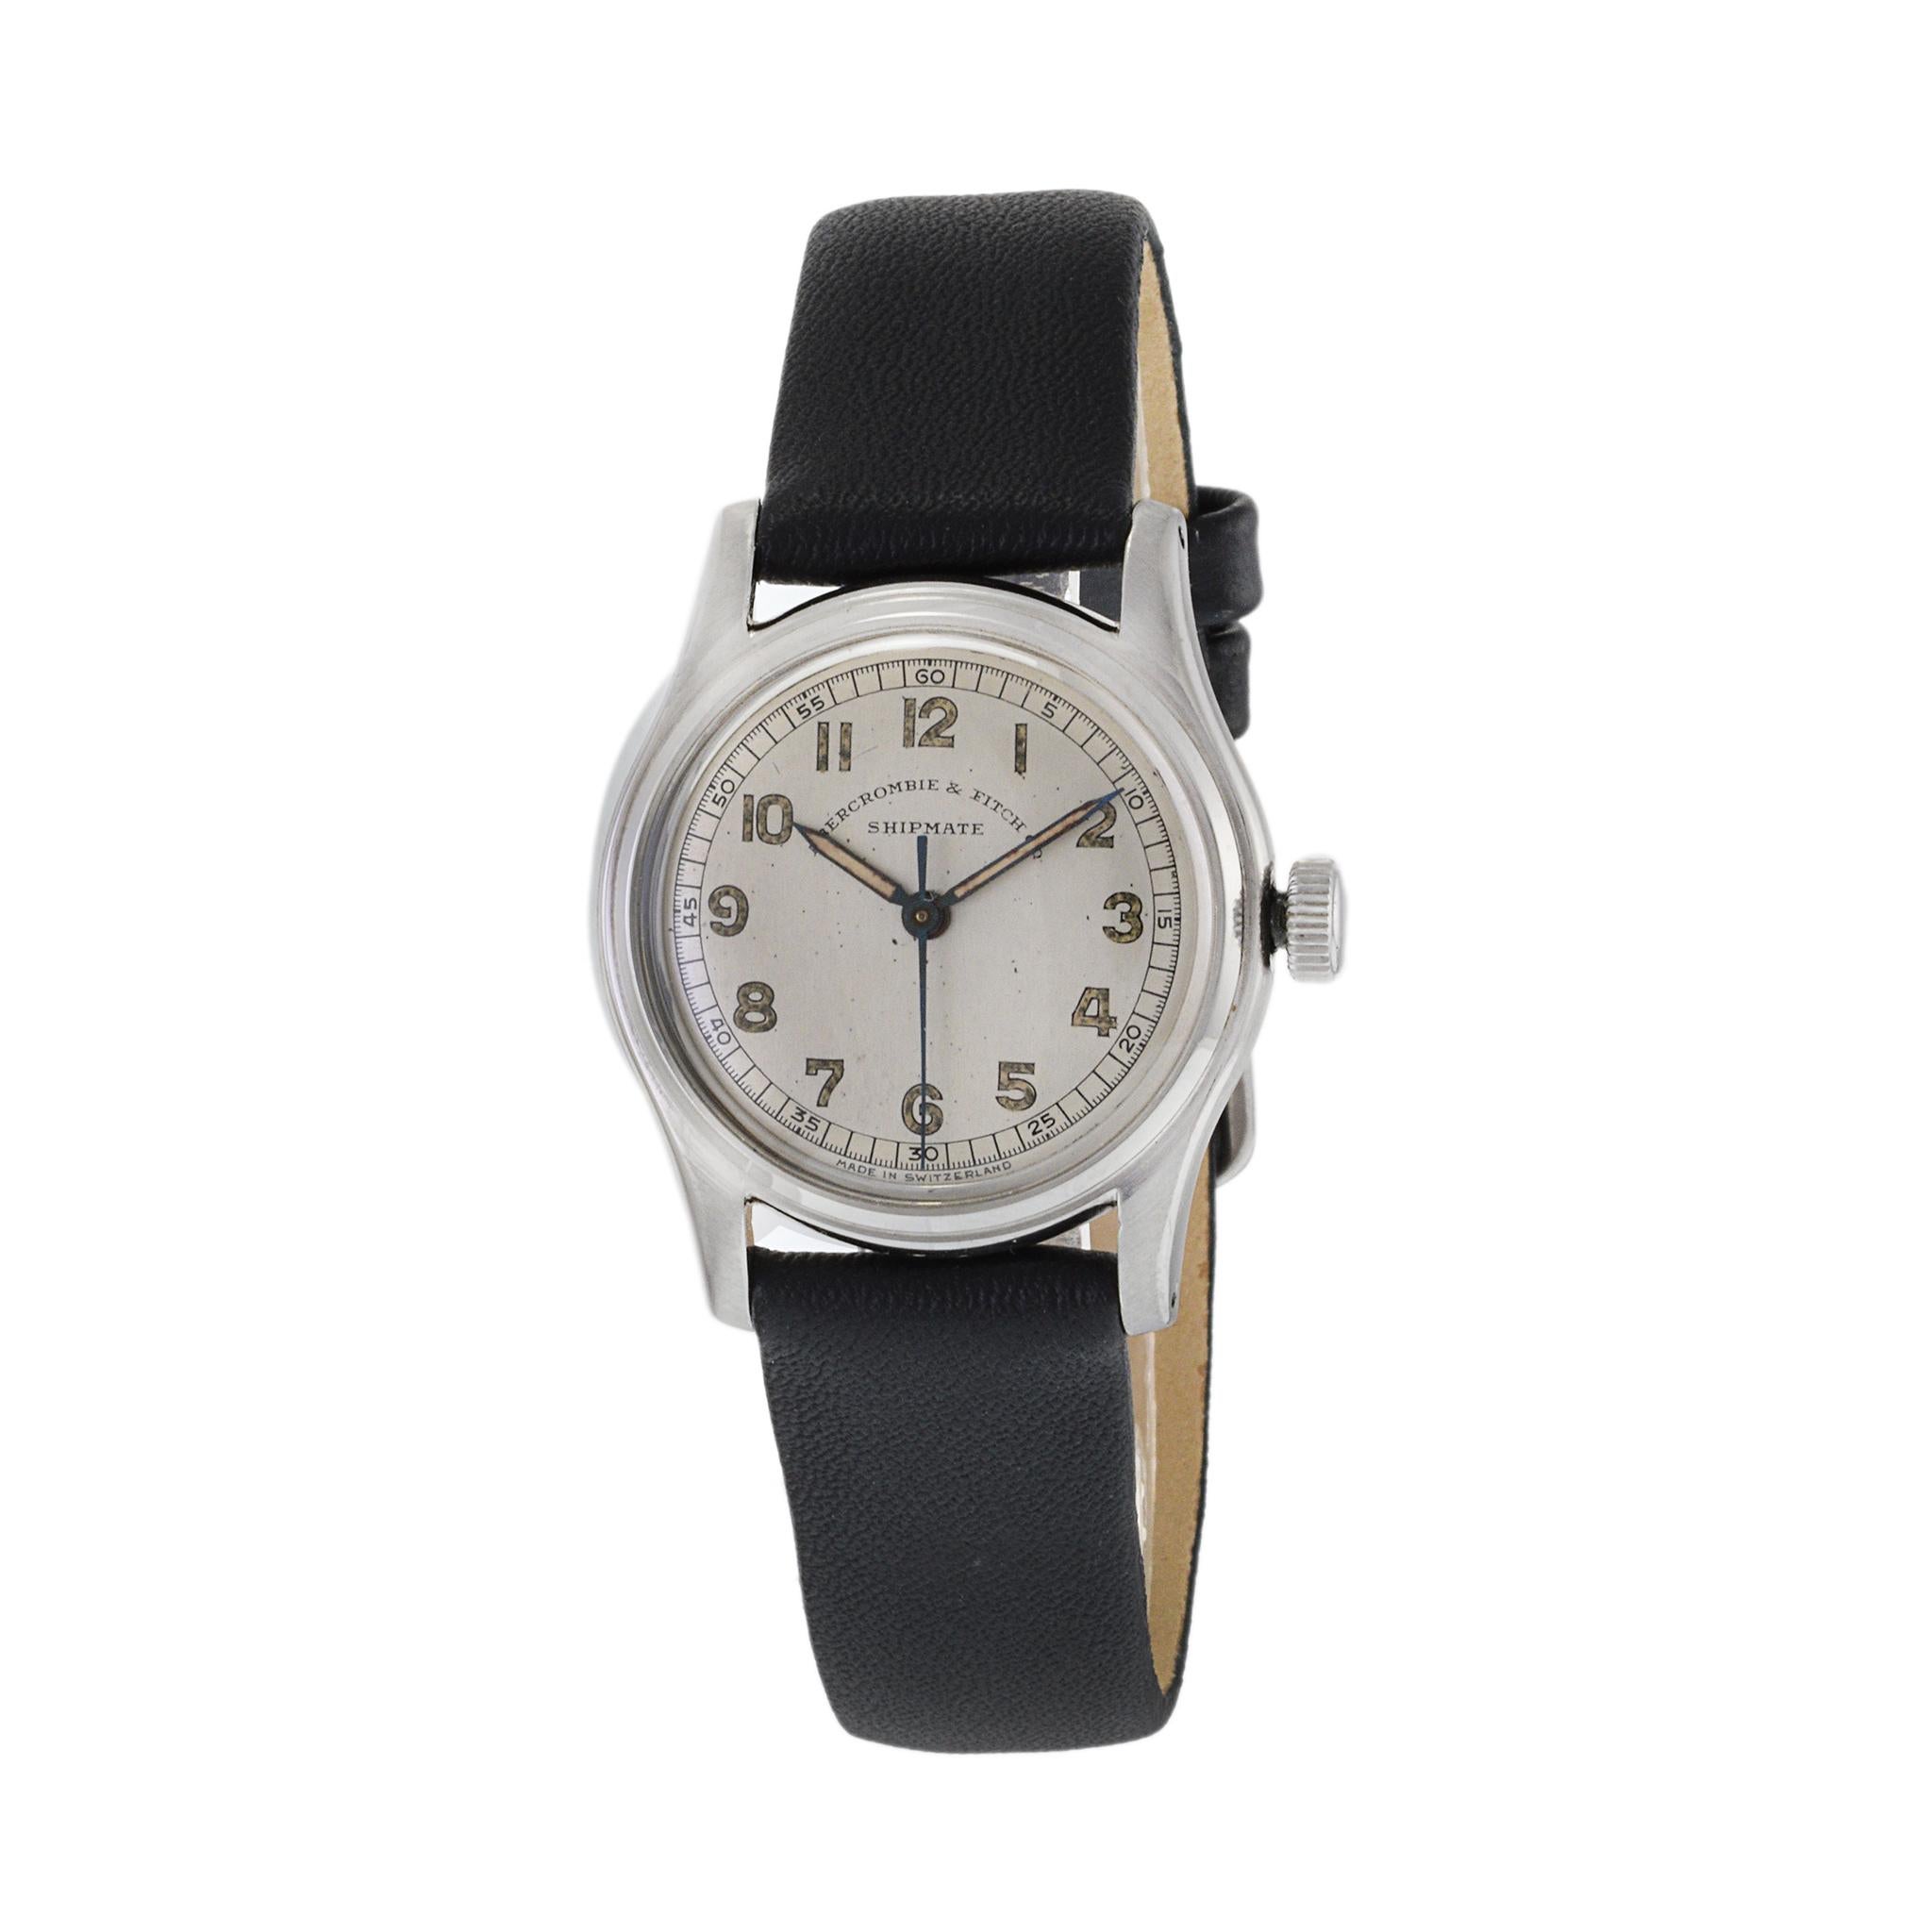 Dies ist eine seltene und originale Abercrombie & Fitch Co. Schiffskamerad. Diese Uhr im militärischen Stil verfügt über ein Original-Zifferblatt, das sich in Anbetracht seines Alters in einem außergewöhnlichen Zustand befindet.

Das